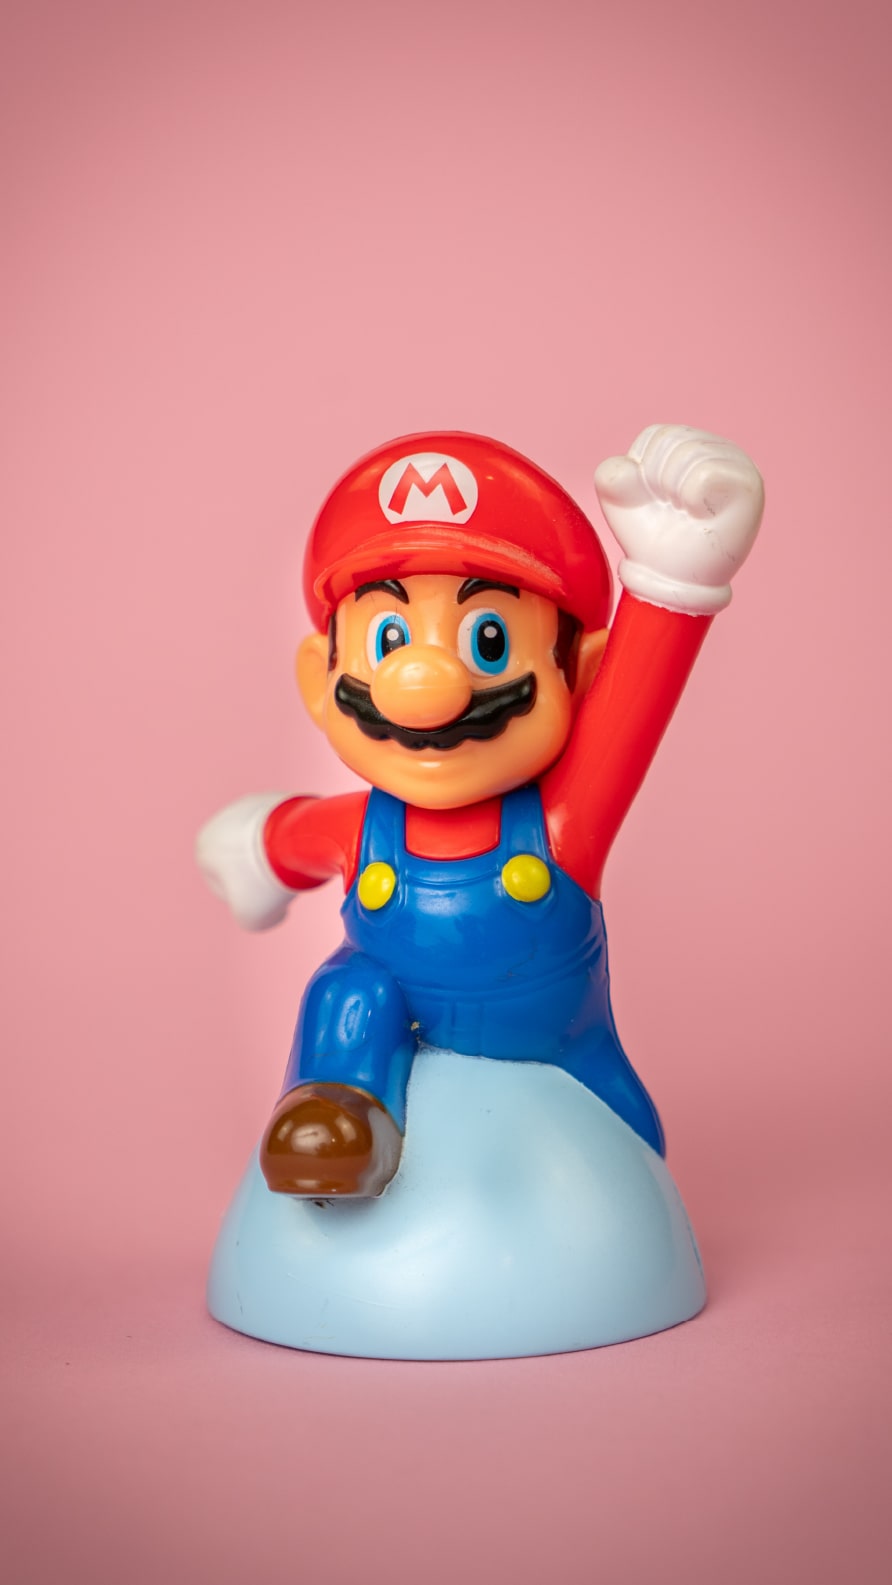 Fonds d'écran iPhone de Mario Bros